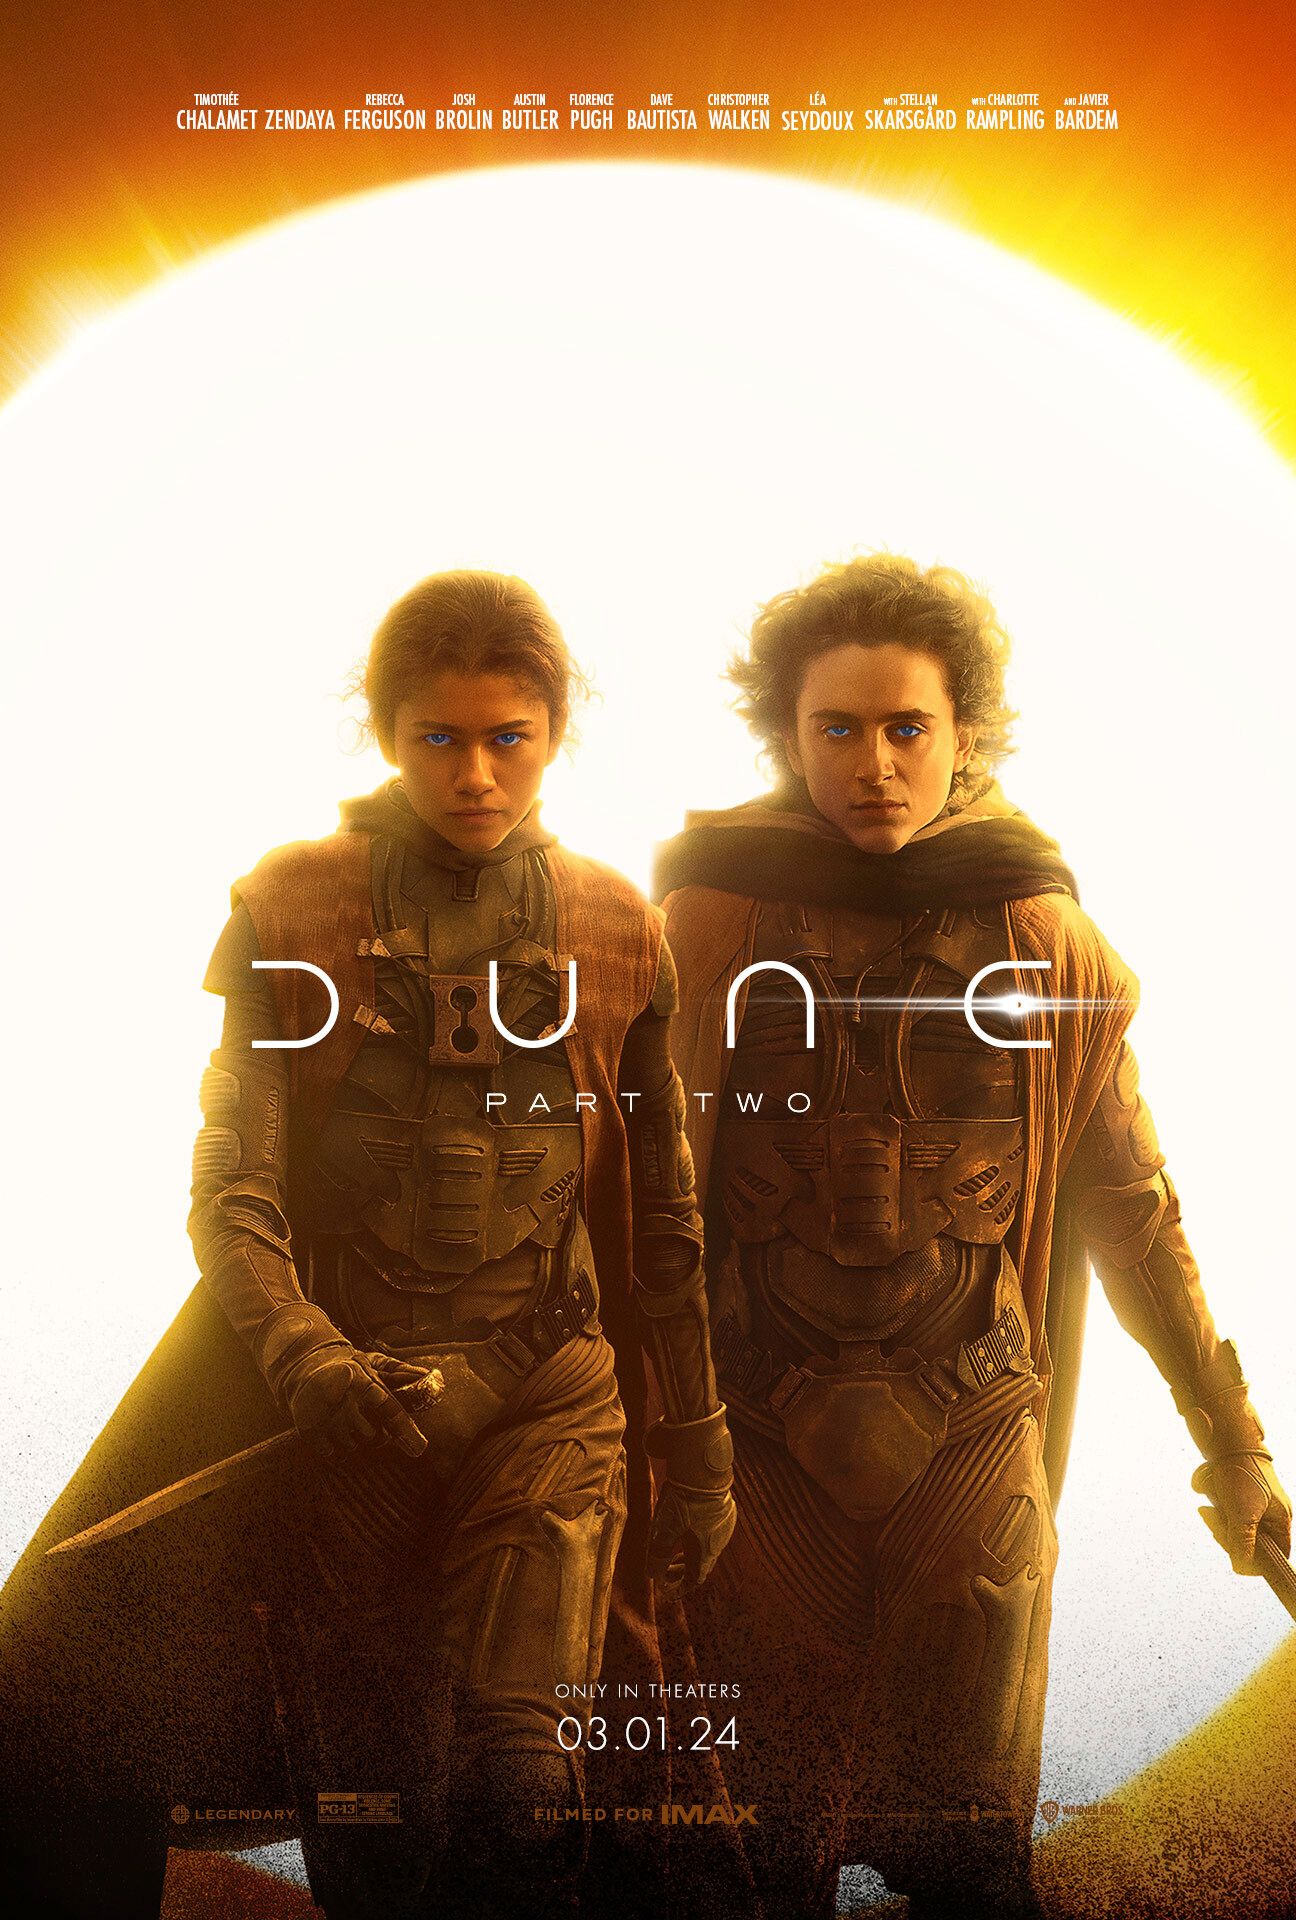 Póster de Dune Parte 2 que muestra a Timothee Chalamet como Paul Atreides y Zendaya como Chani sosteniendo dagas